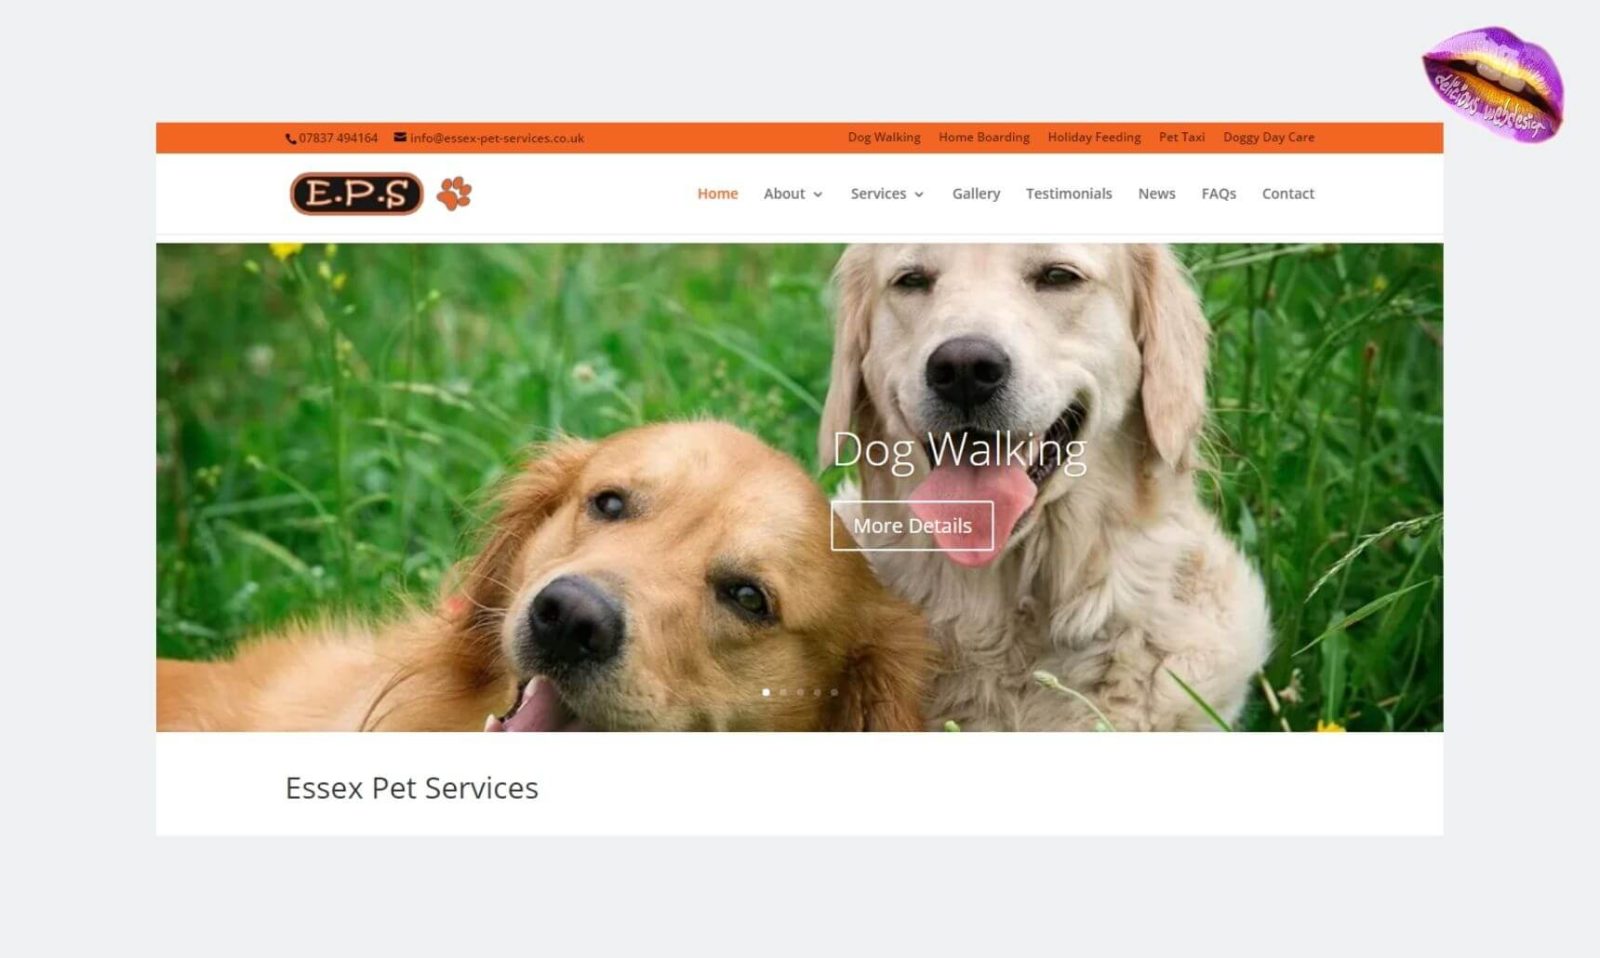 Essex Pet Services